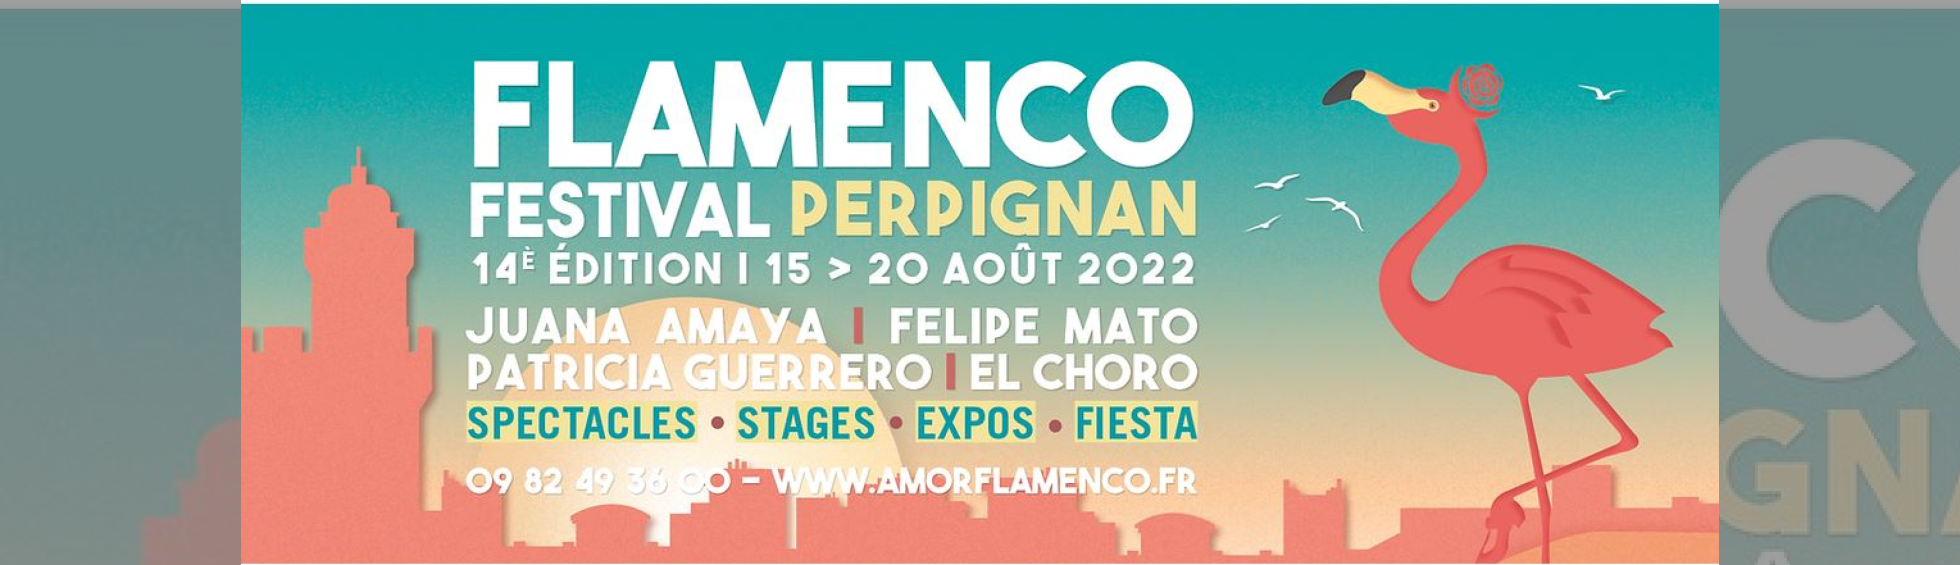 Festival de Flamenco